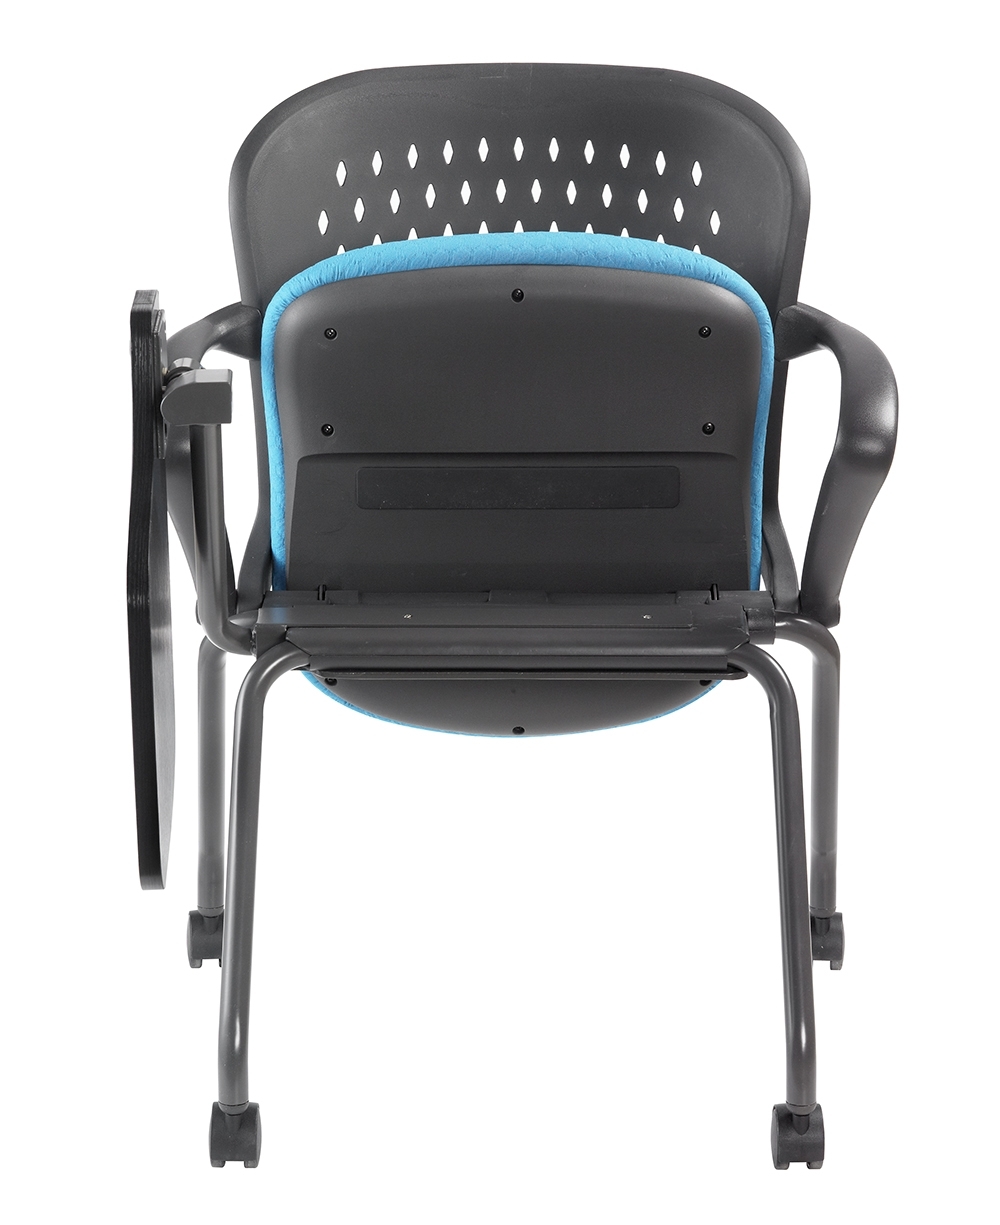 NXO 6401 Nightingale SA Chair